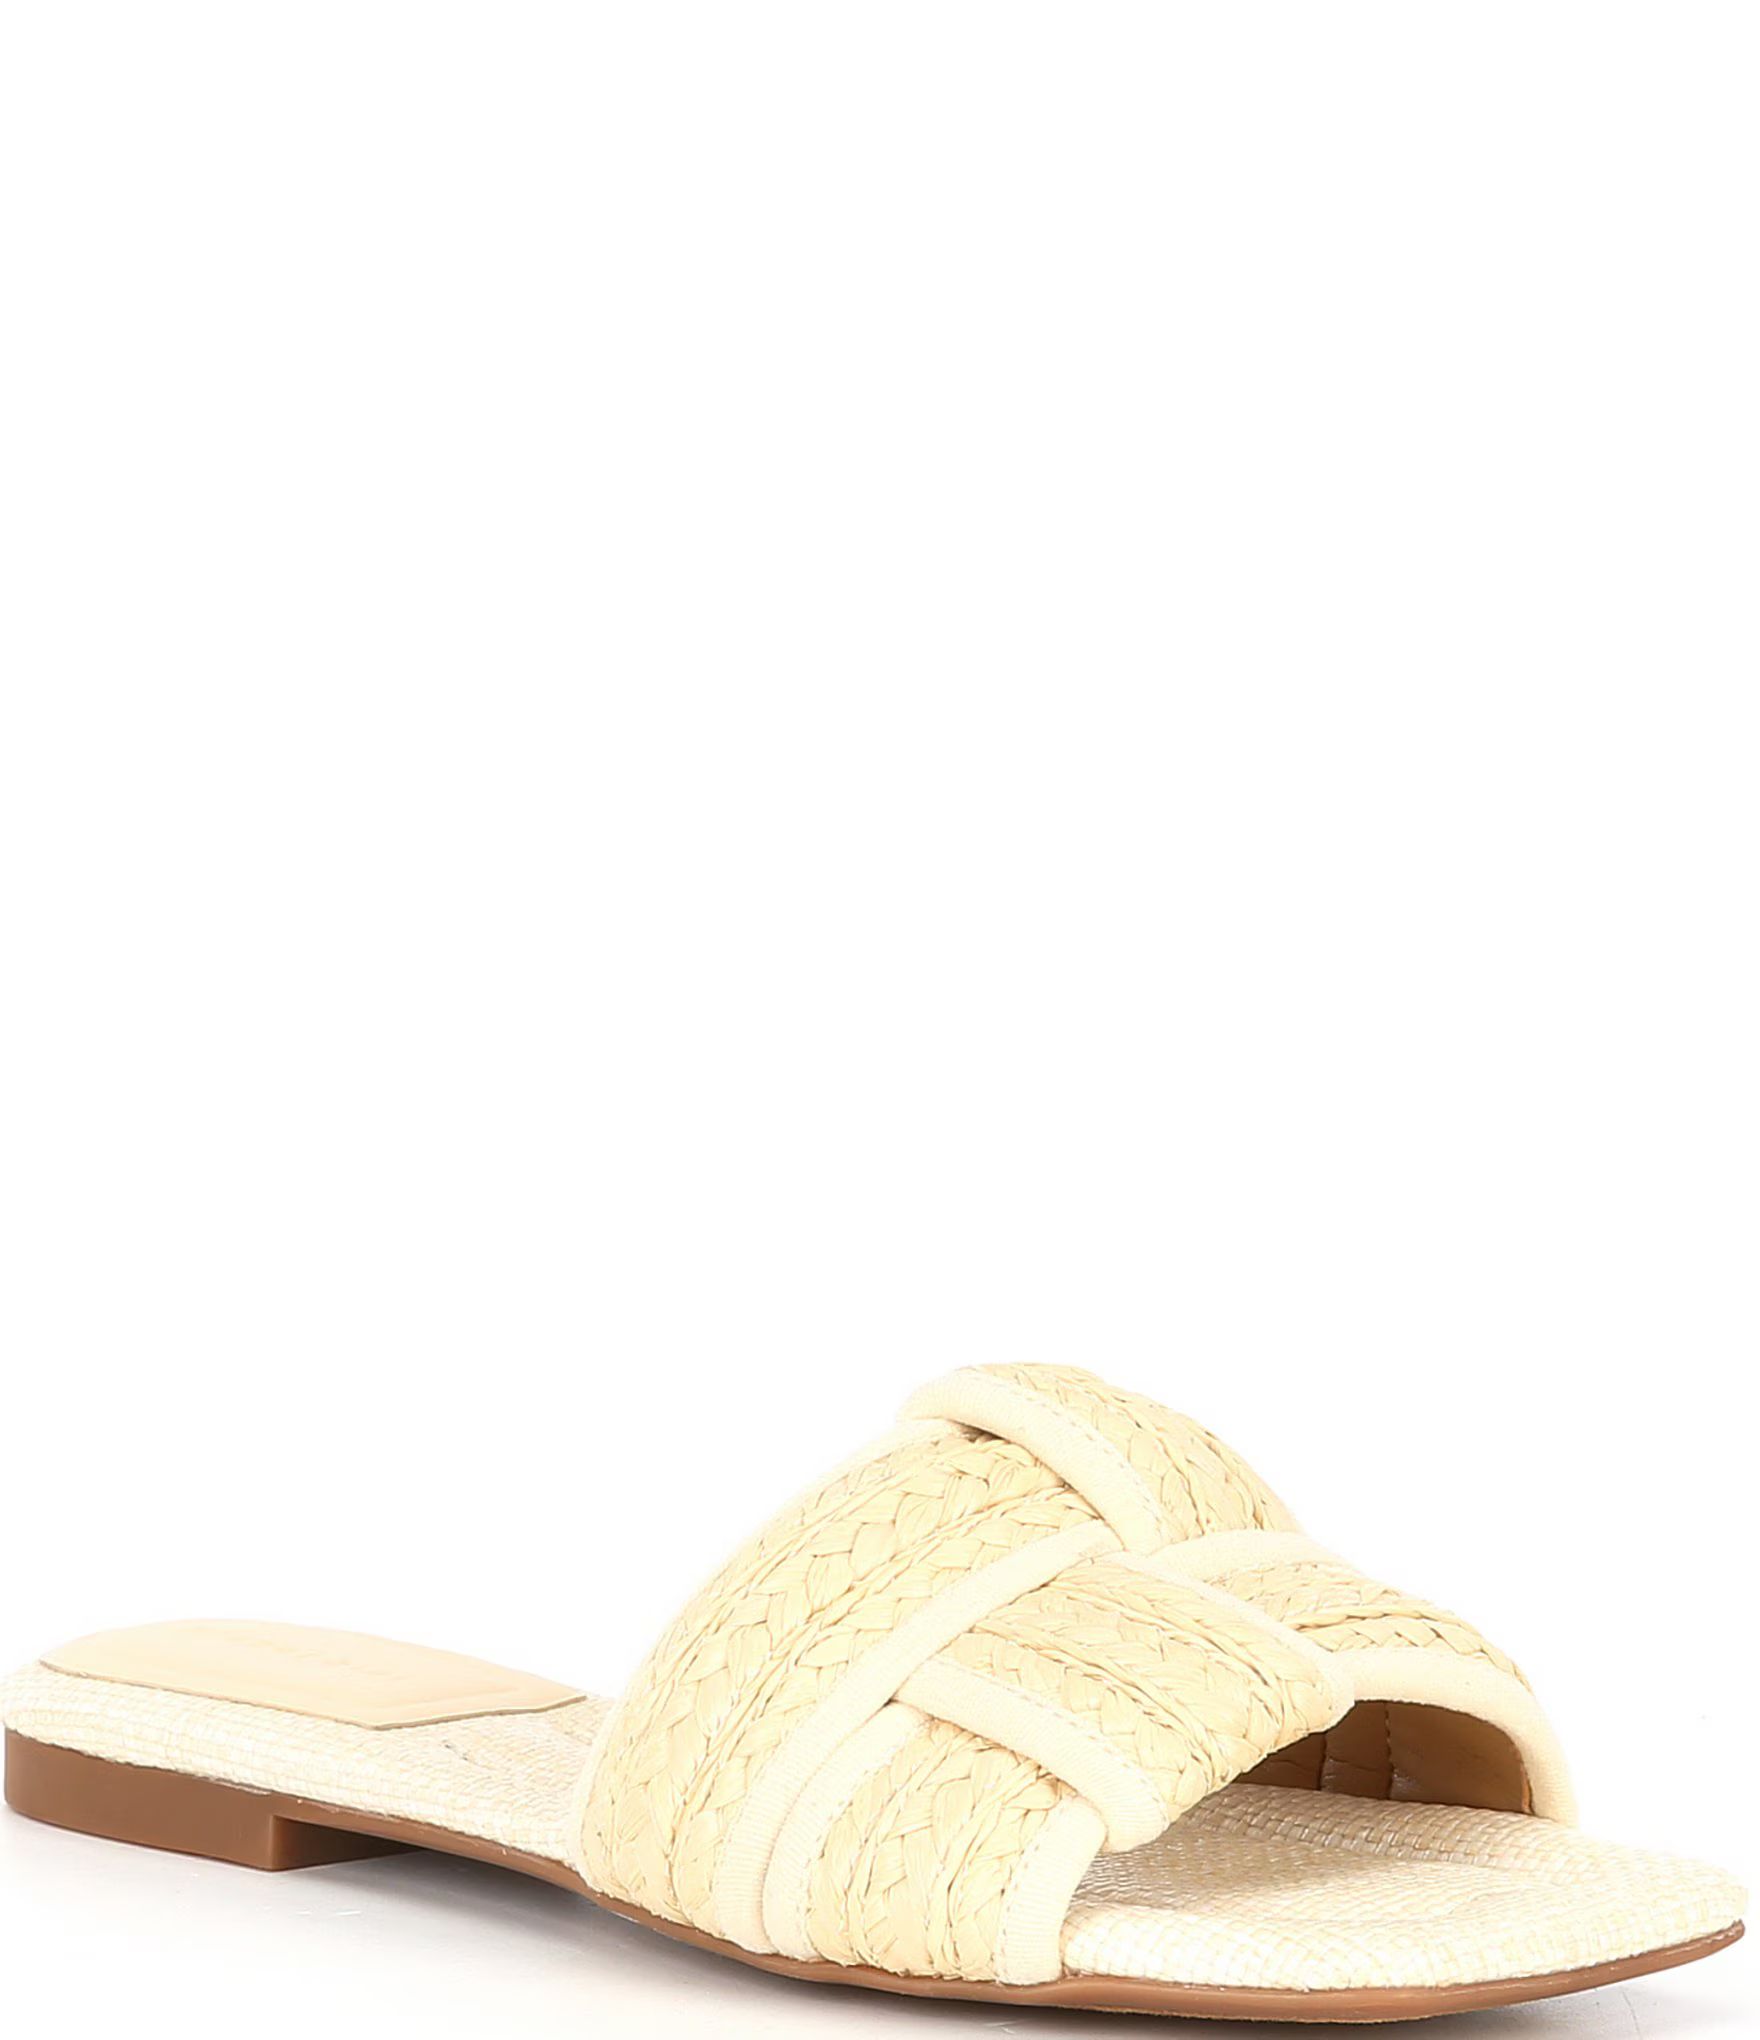 Gianni Bini Caruso Raffia Woven Flat Sandals | Dillard's | Dillard's